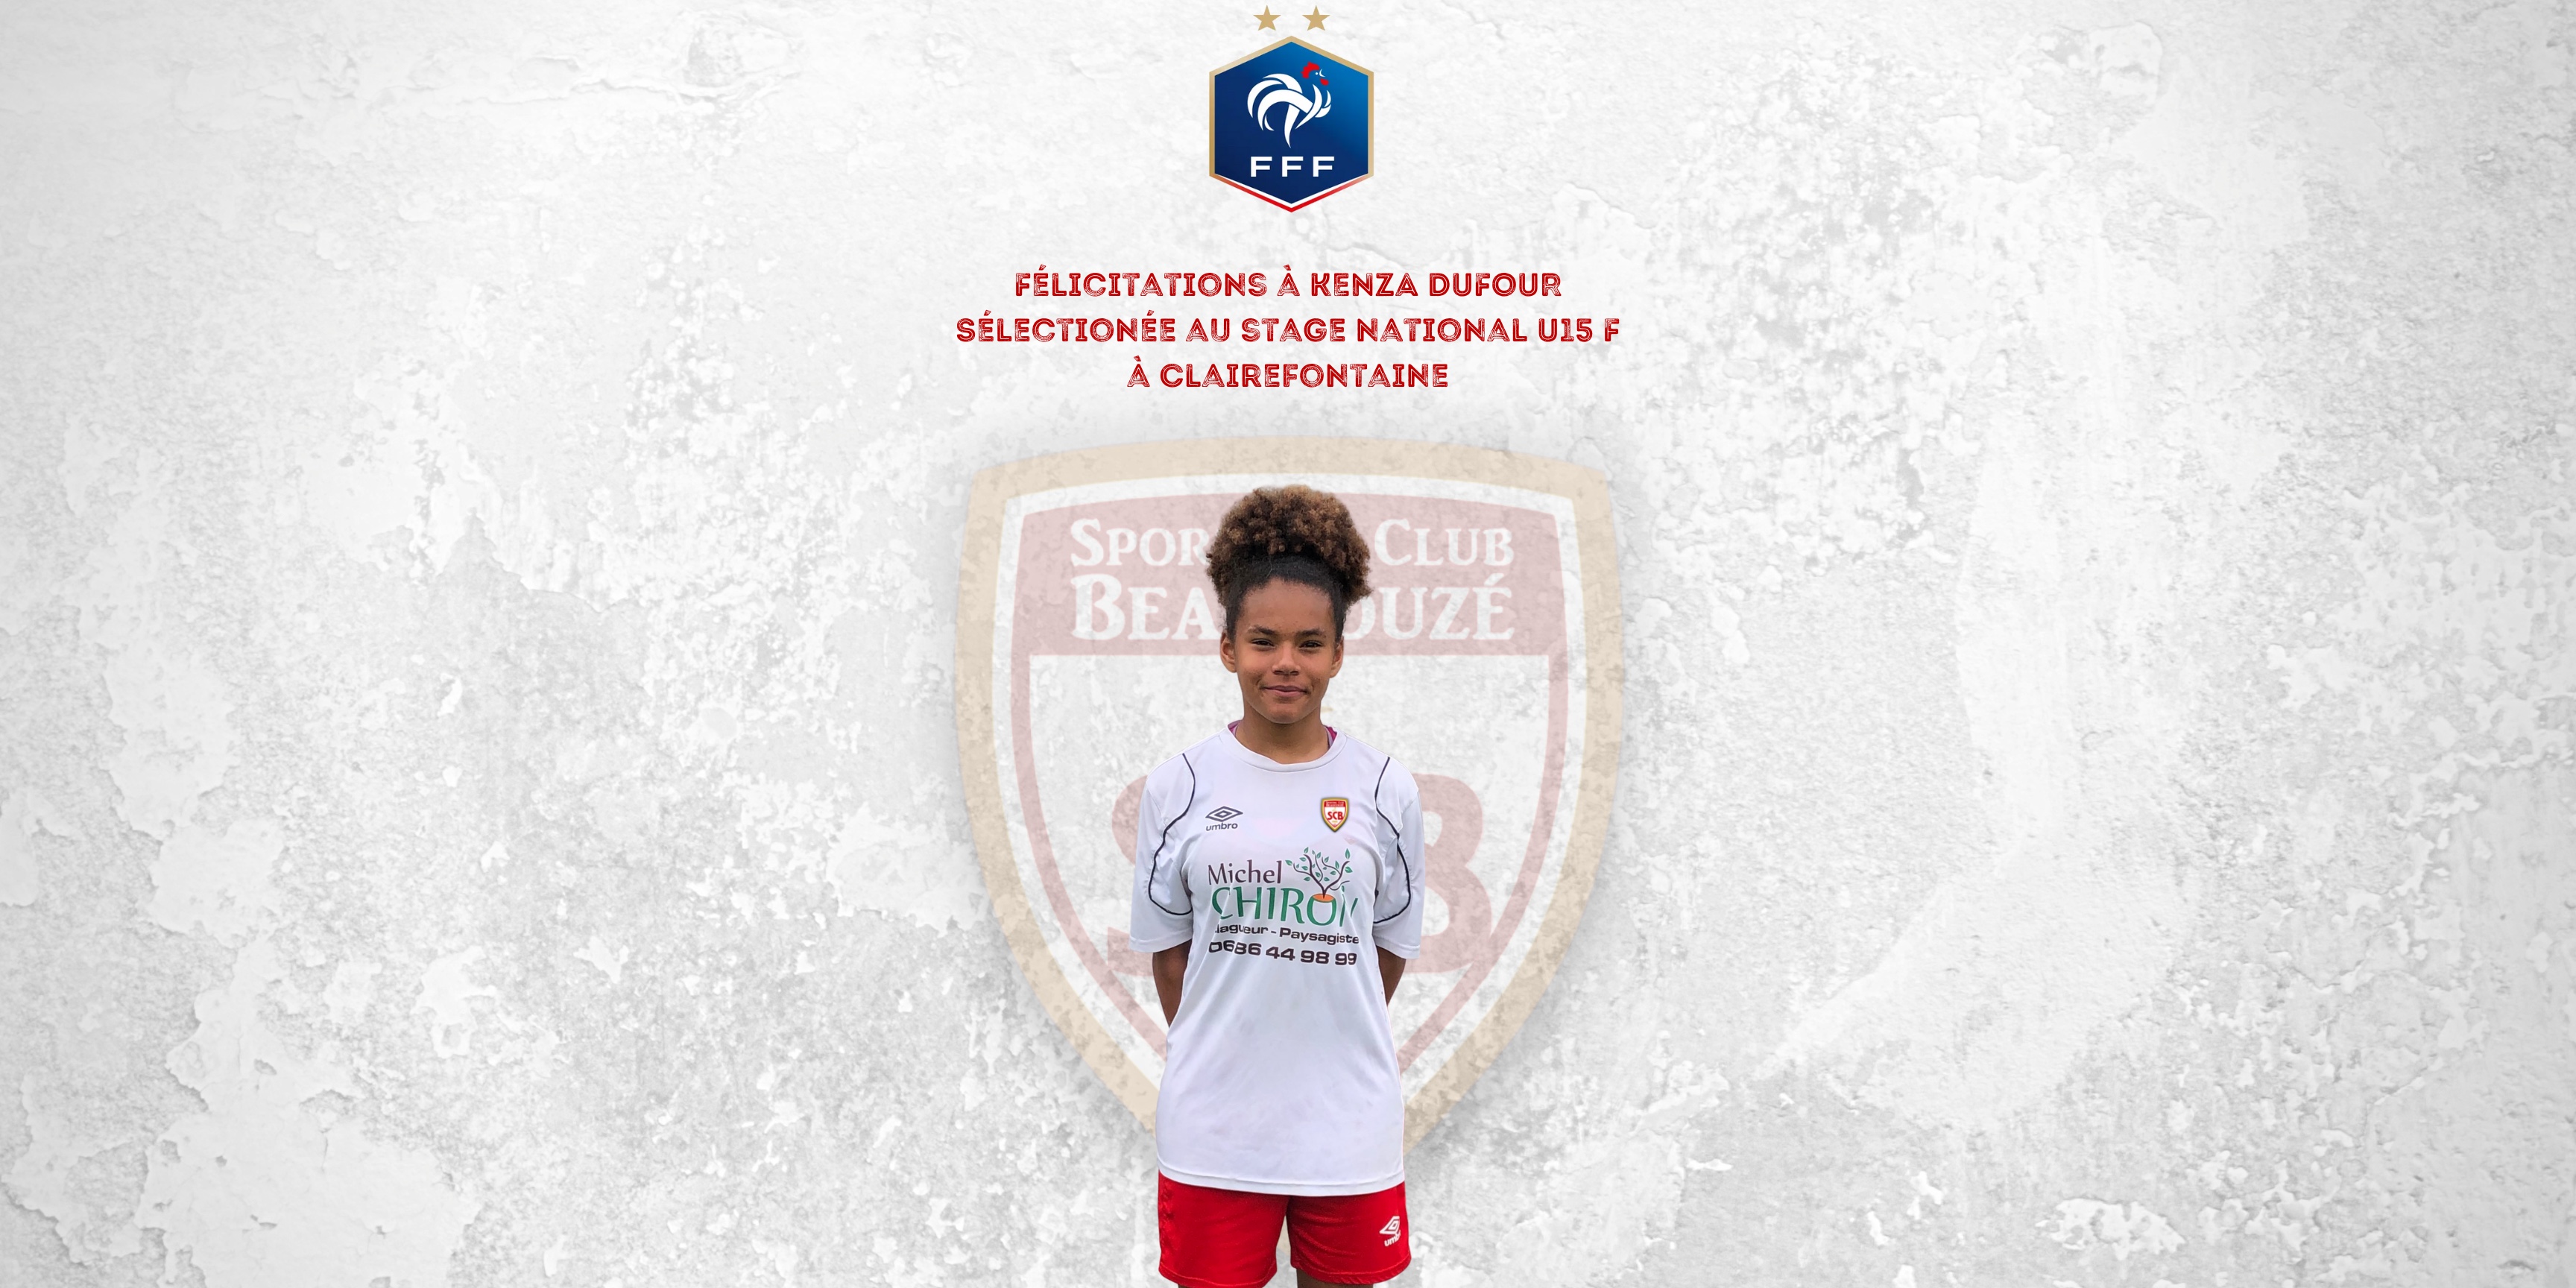 Kenza DUFOUR sélectionnée pour le stage National U15 F à Clairefontaine !